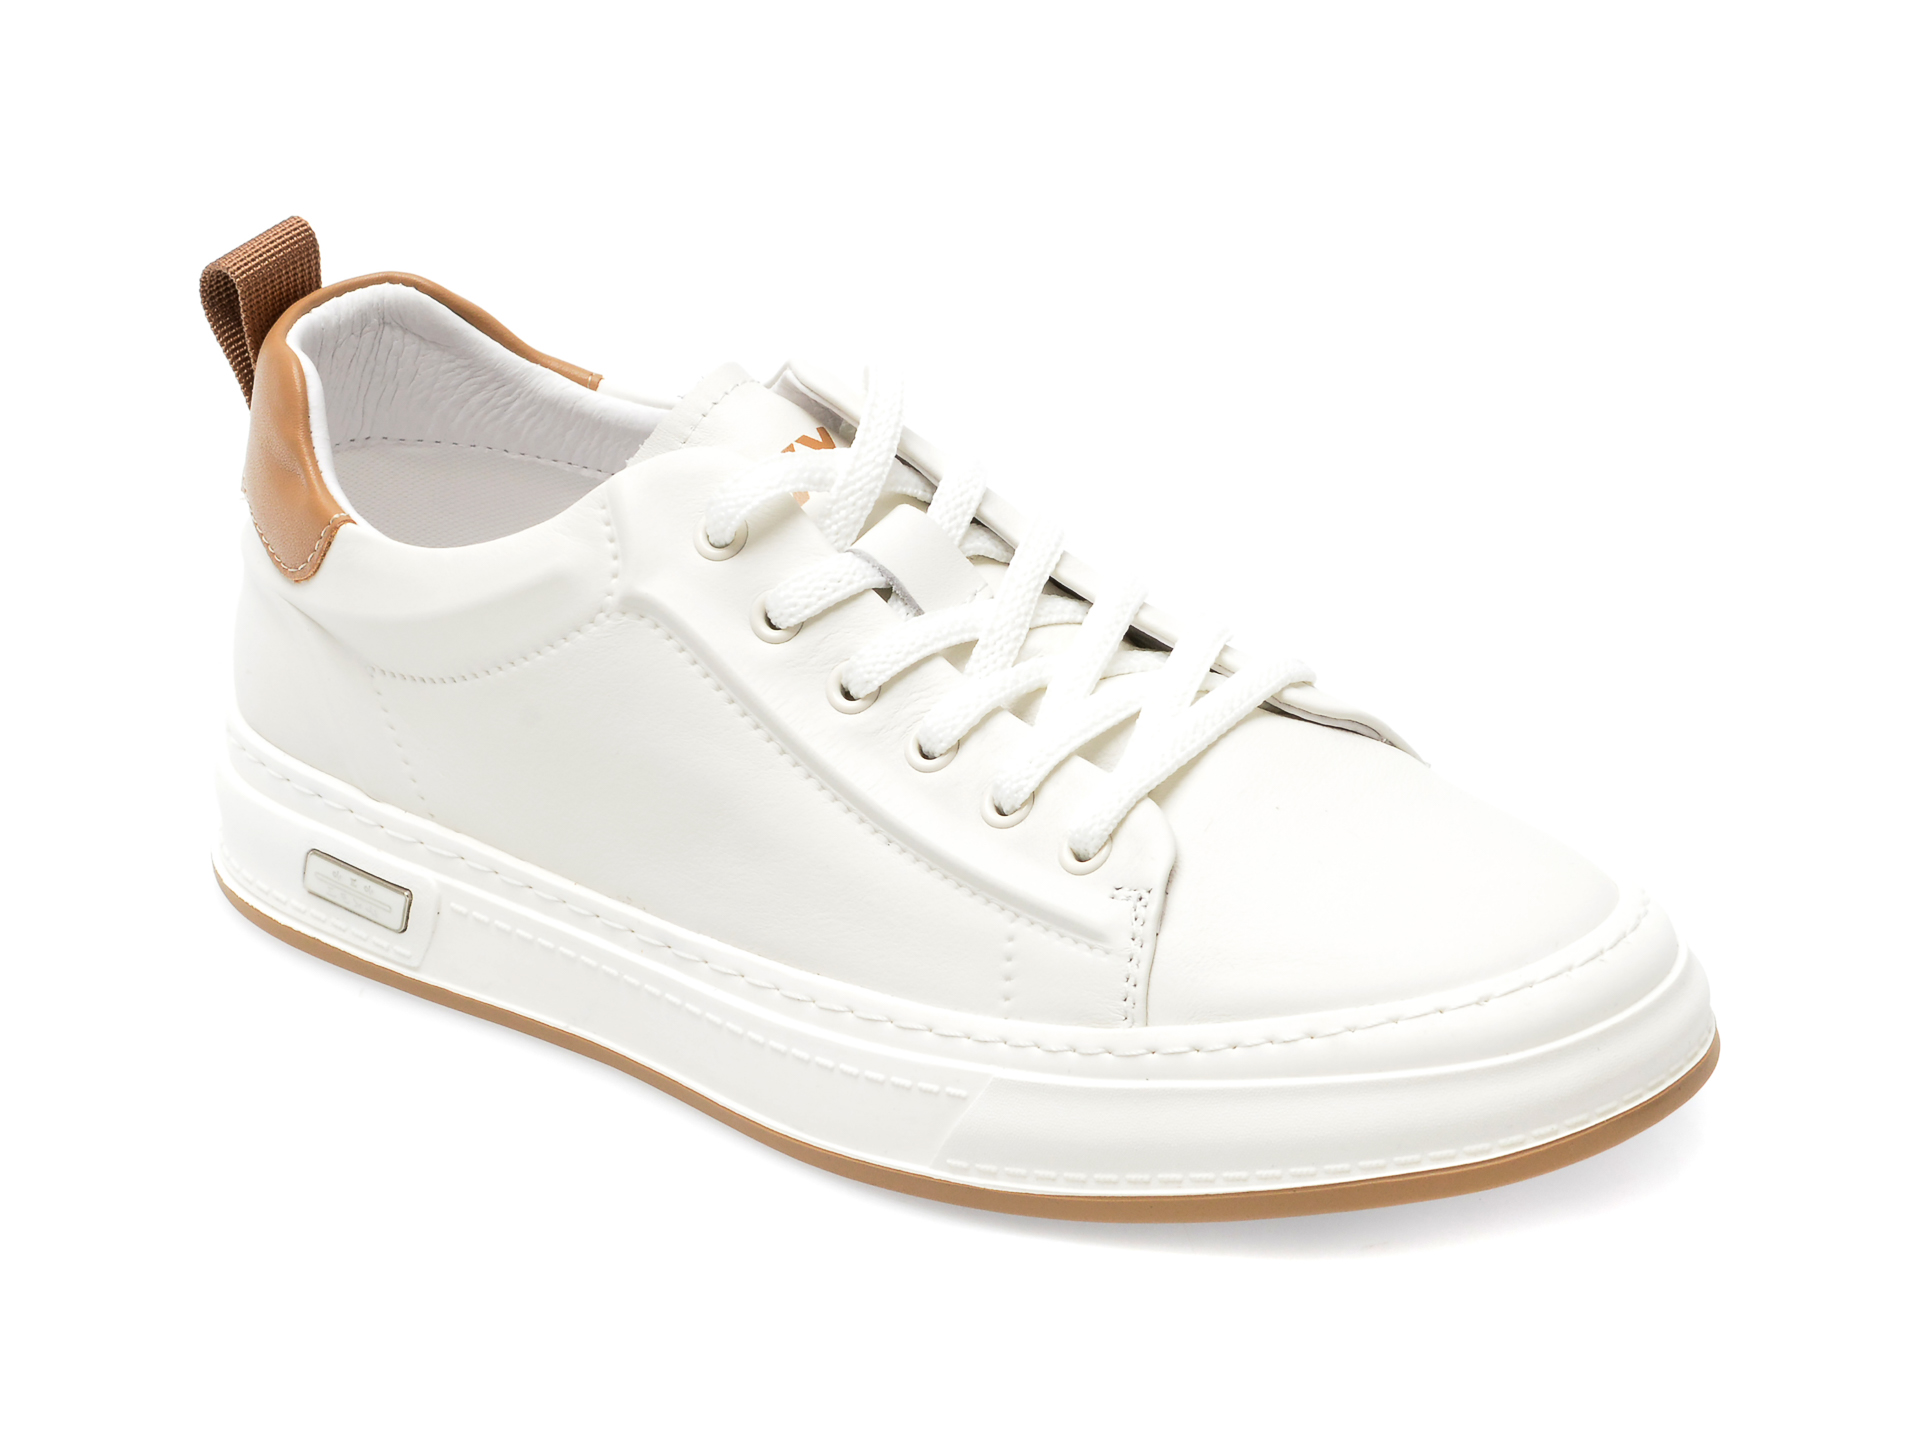 Pantofi GRYXX albi, 3081, din piele naturala